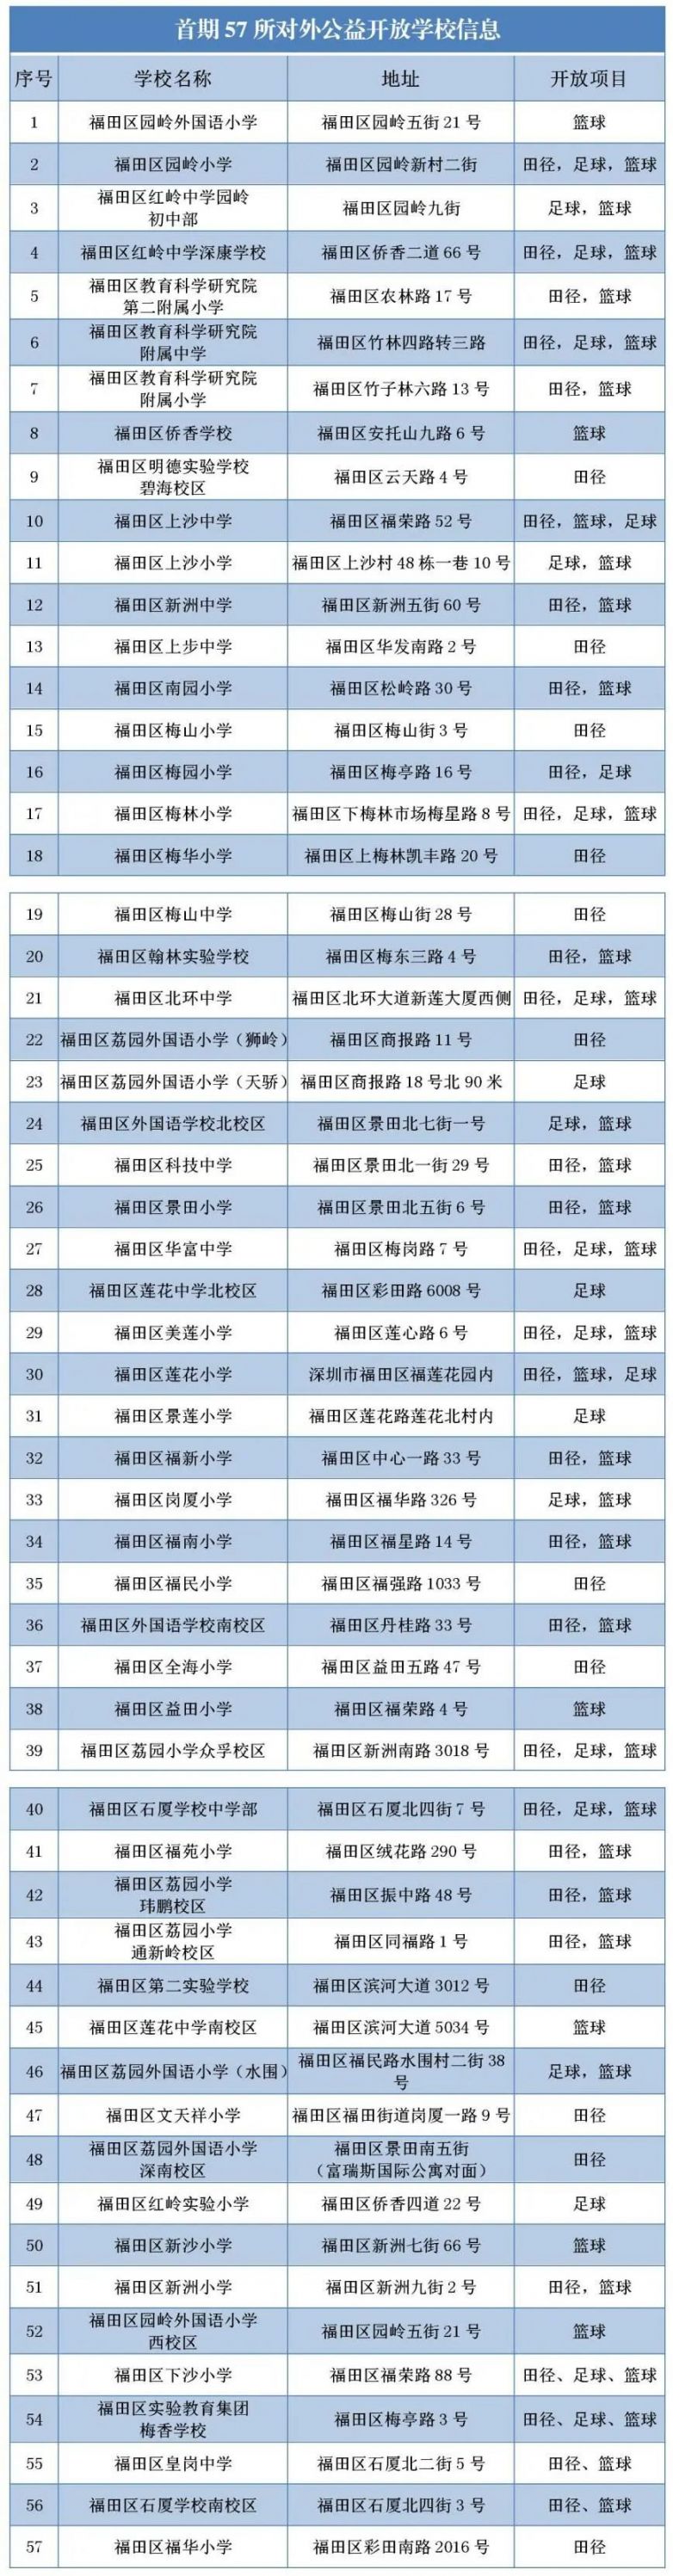 福田区首期面向社会开放体育场地的57所学校名单一览